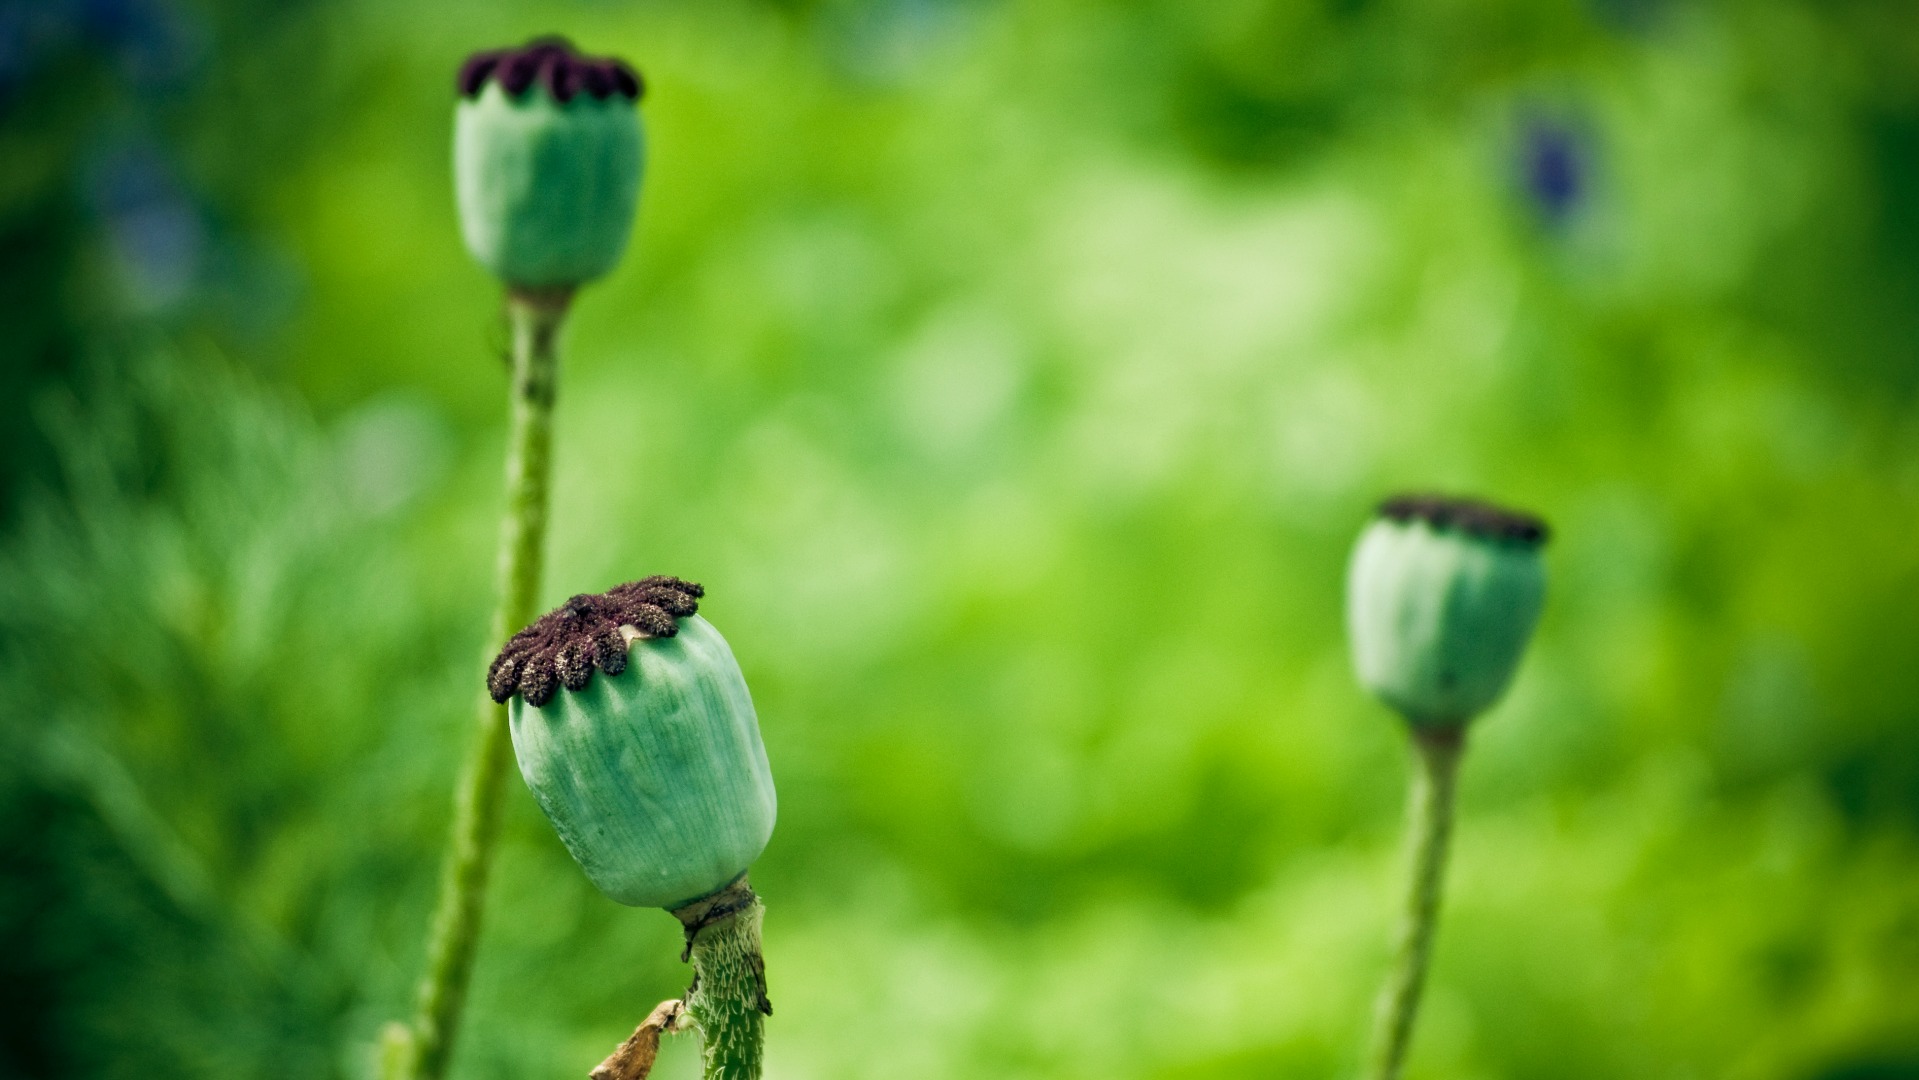 Beaucoup de paysans du Sud subsistent grâce à la culture de l'opium (Photo:flylynx/Flickr/CC BY-NC-ND 2.0)